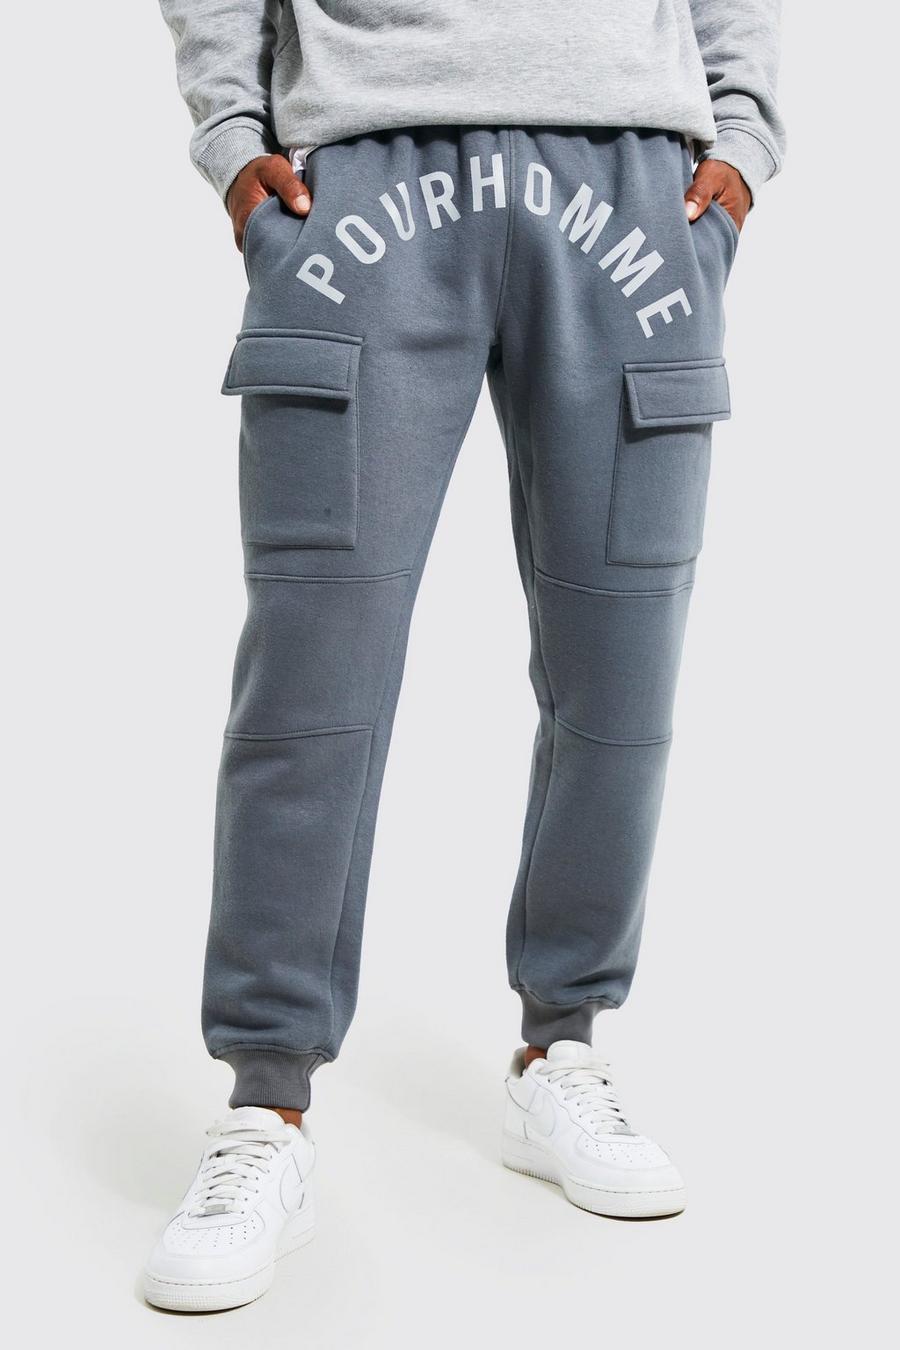 Pantalón deportivo cargo ajustado con estampado Pour Homme, Charcoal gris